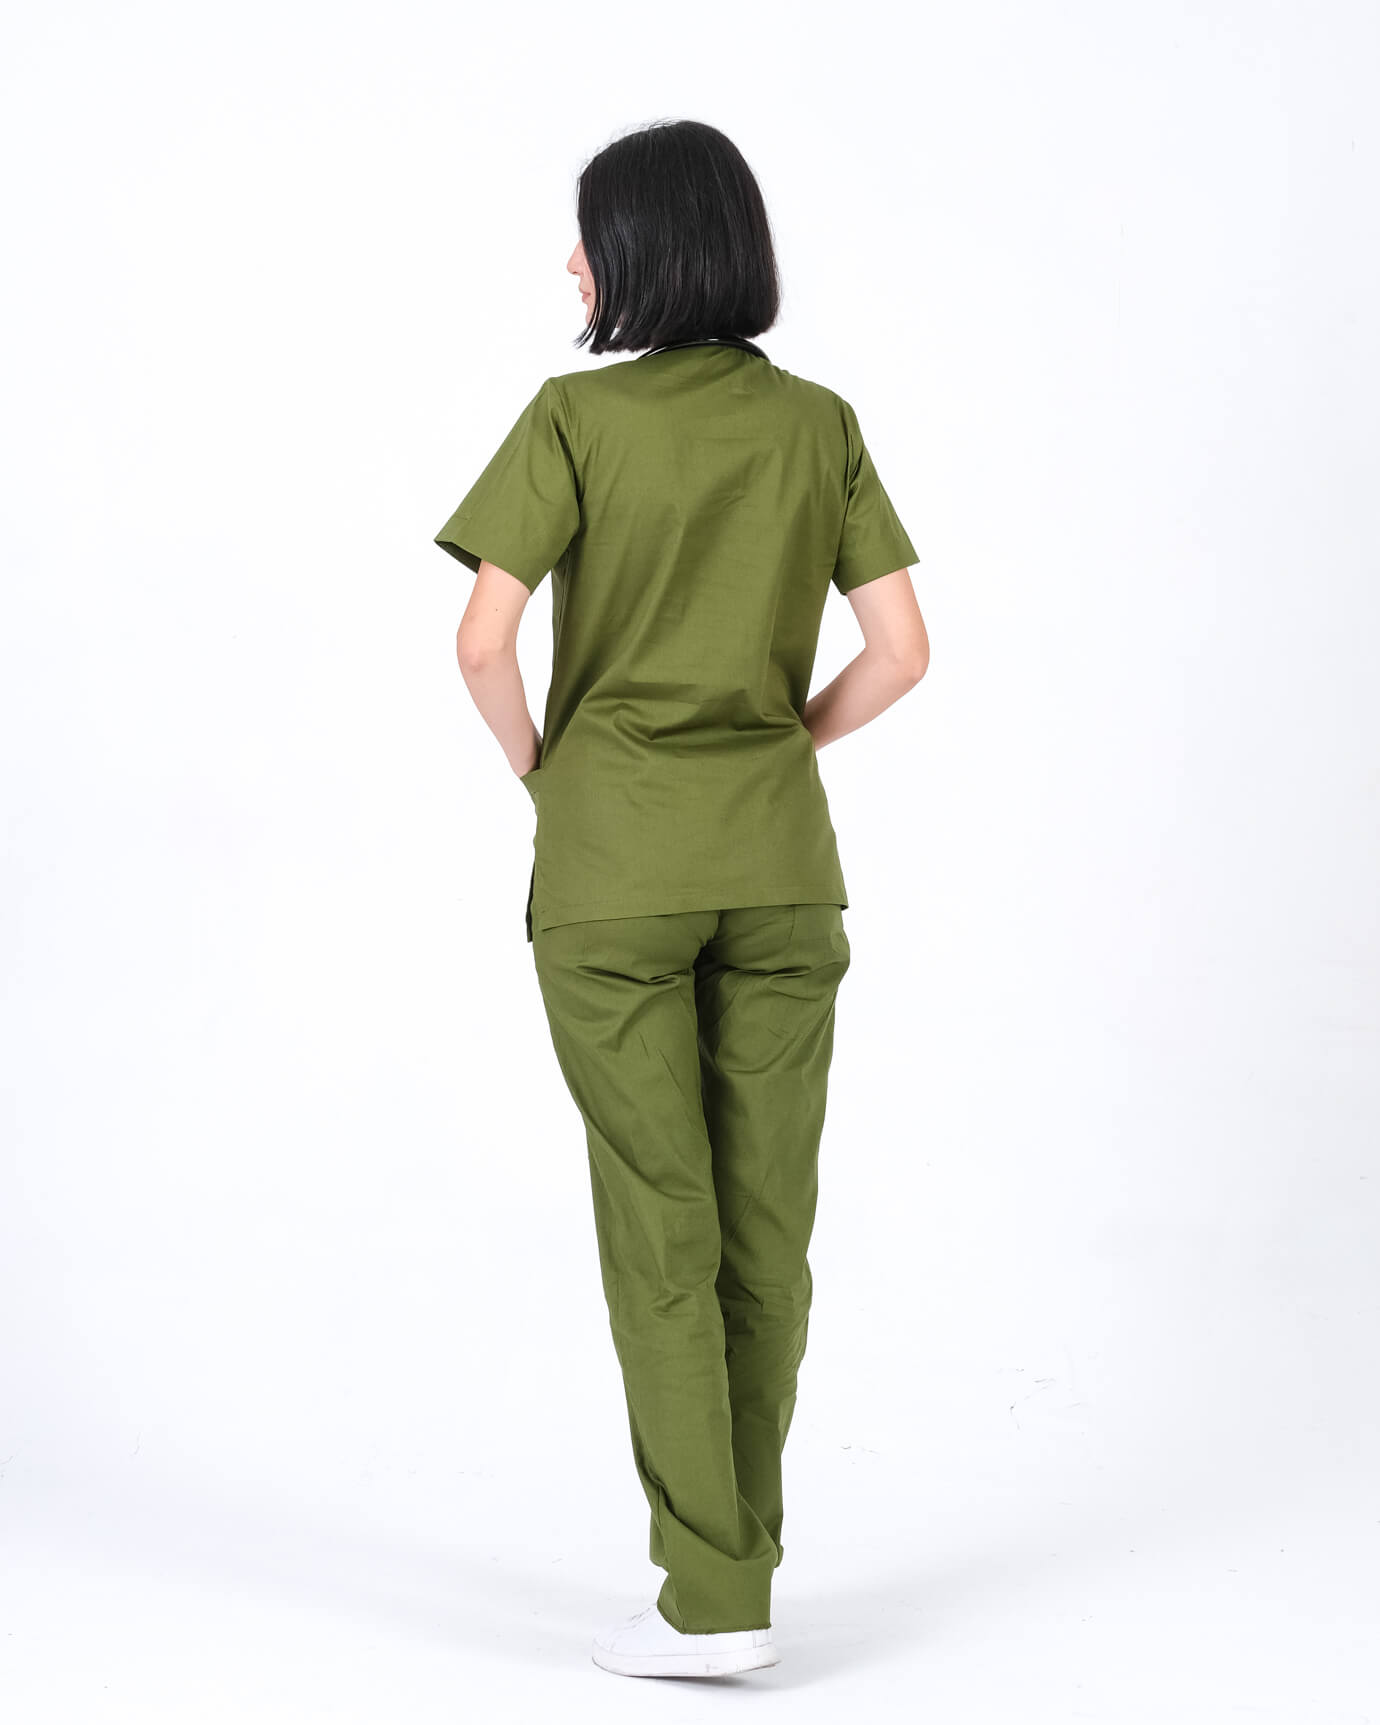 Kadın %100 Pamuk Likralı Takma Kol Asker Yeşili Doktor ve Hemşire Forması Scrubs Takımı